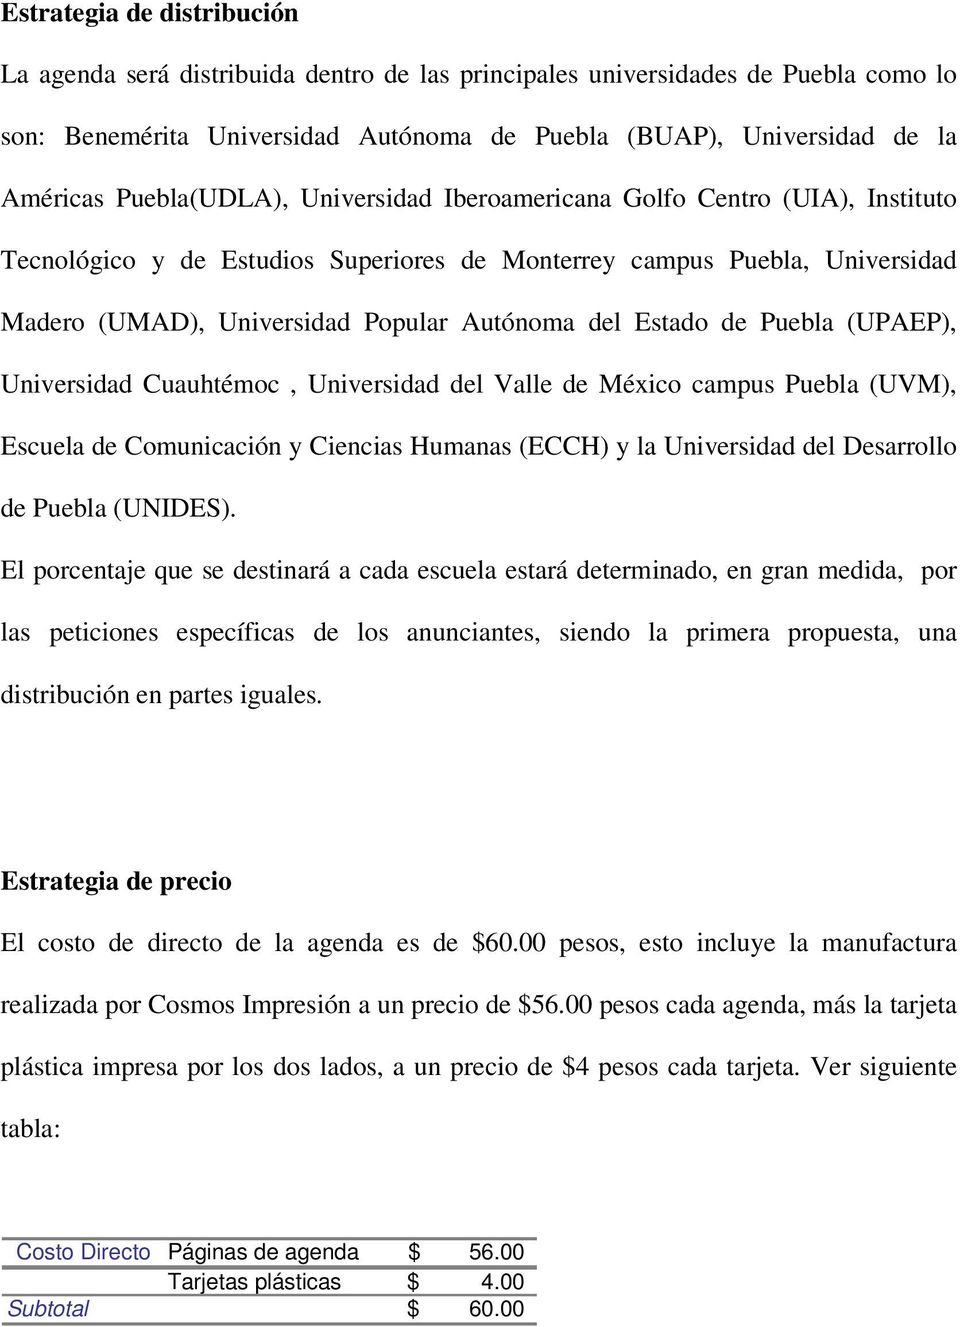 Estado de Puebla (UPAEP), Universidad Cuauhtémoc, Universidad del Valle de México campus Puebla (UVM), Escuela de Comunicación y Ciencias Humanas (ECCH) y la Universidad del Desarrollo de Puebla